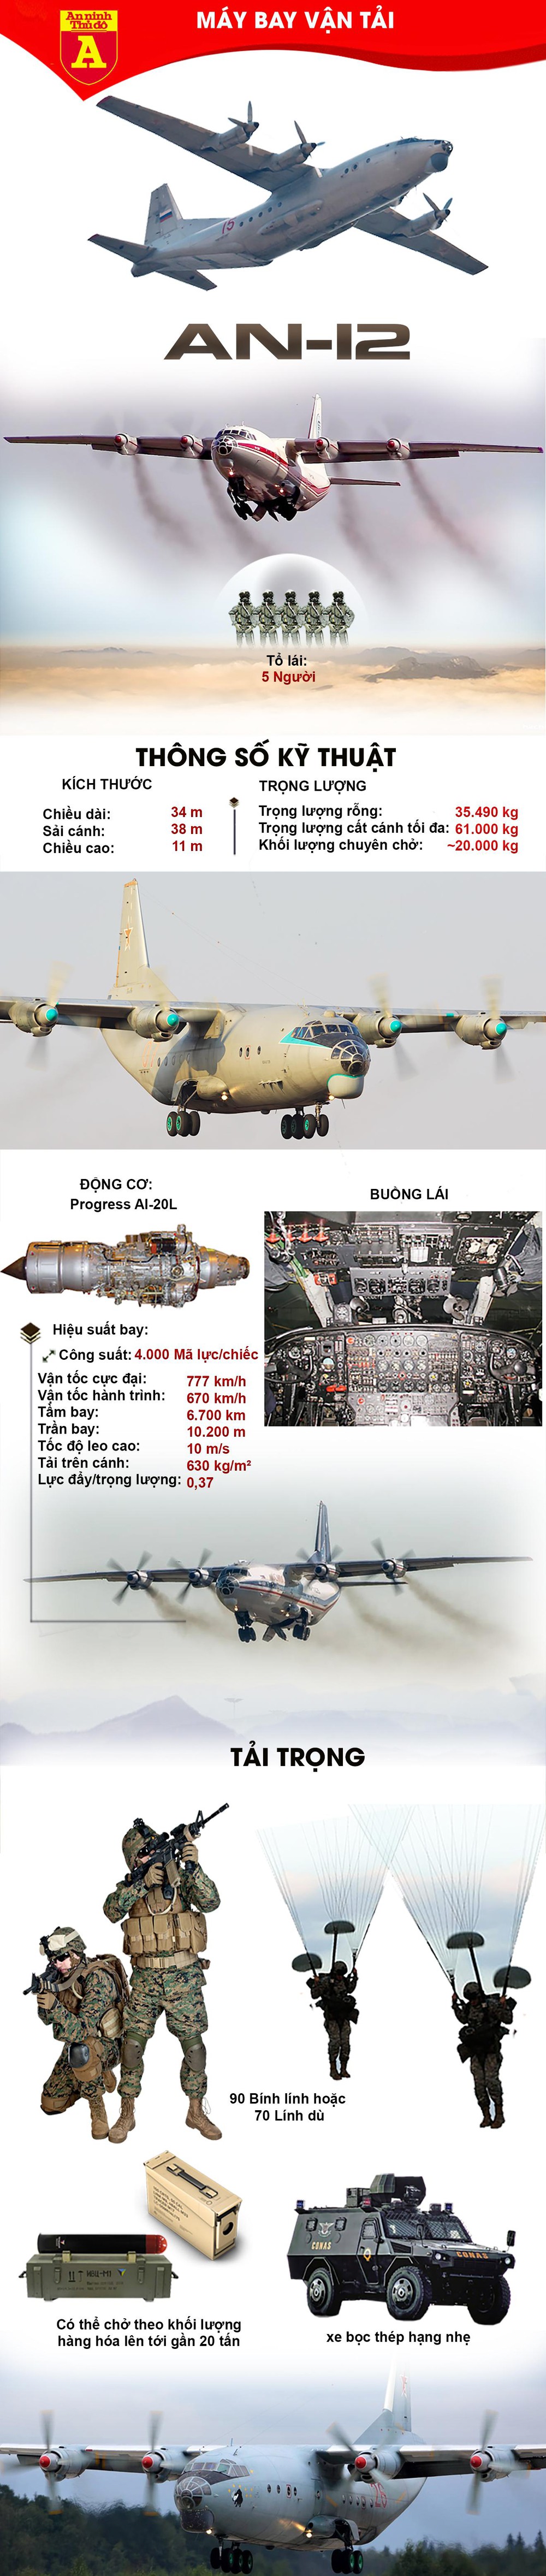 Các thông số "sốc" về máy bay vận tải An-12  - Ảnh 1